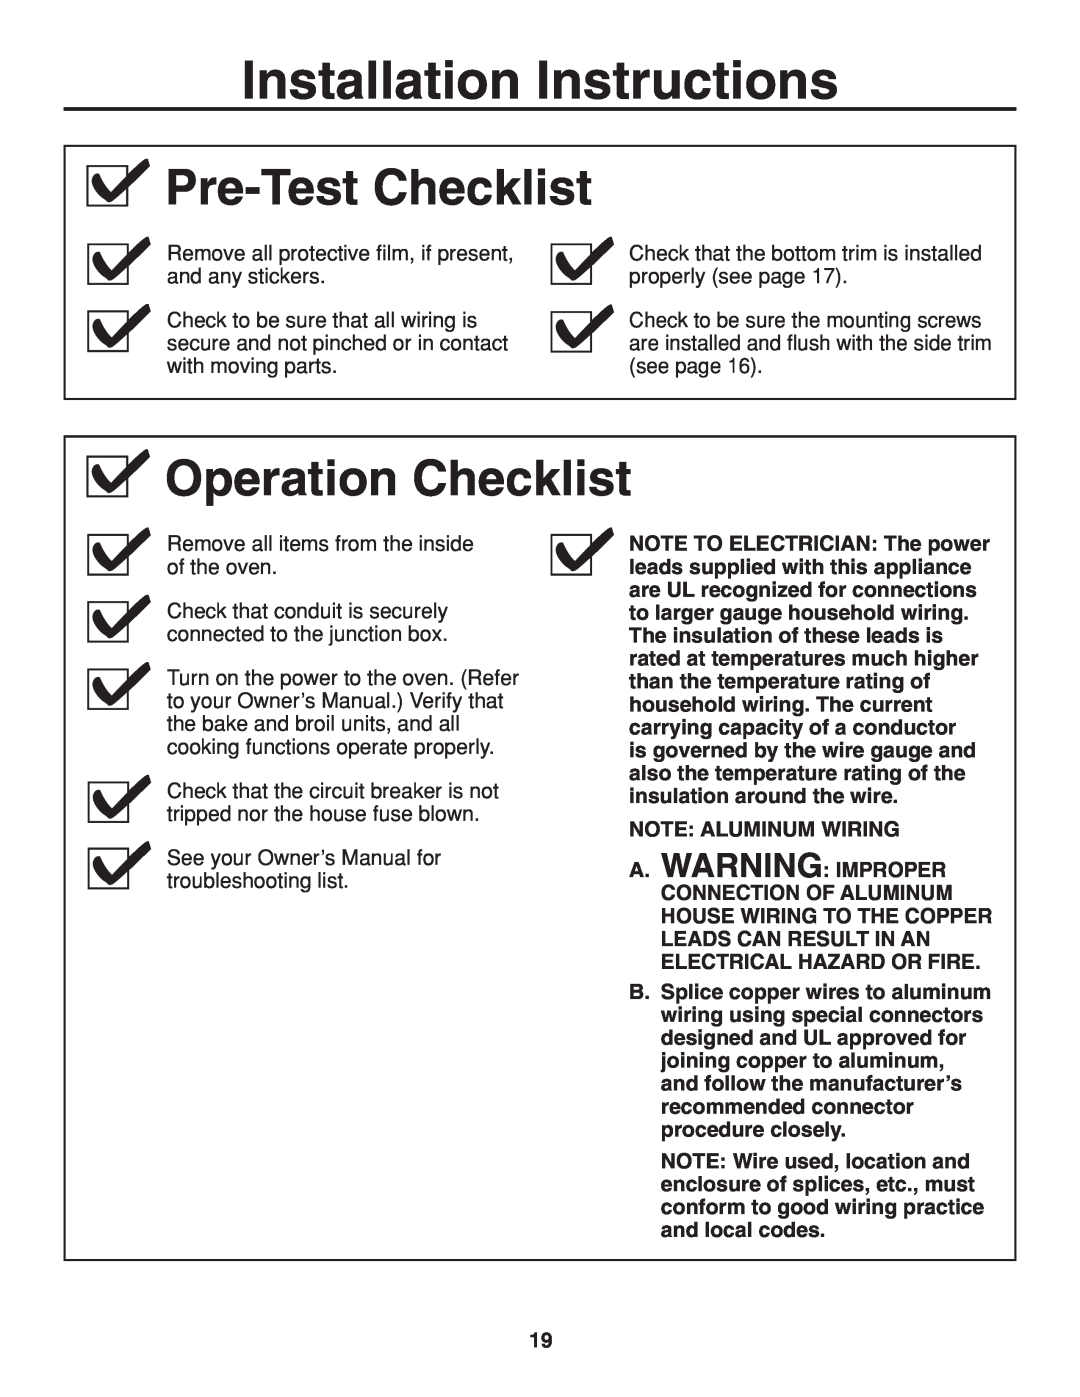 GE r08654v-1 installation instructions Operation Checklist, Pre-Test Checklist, Installation Instructions 